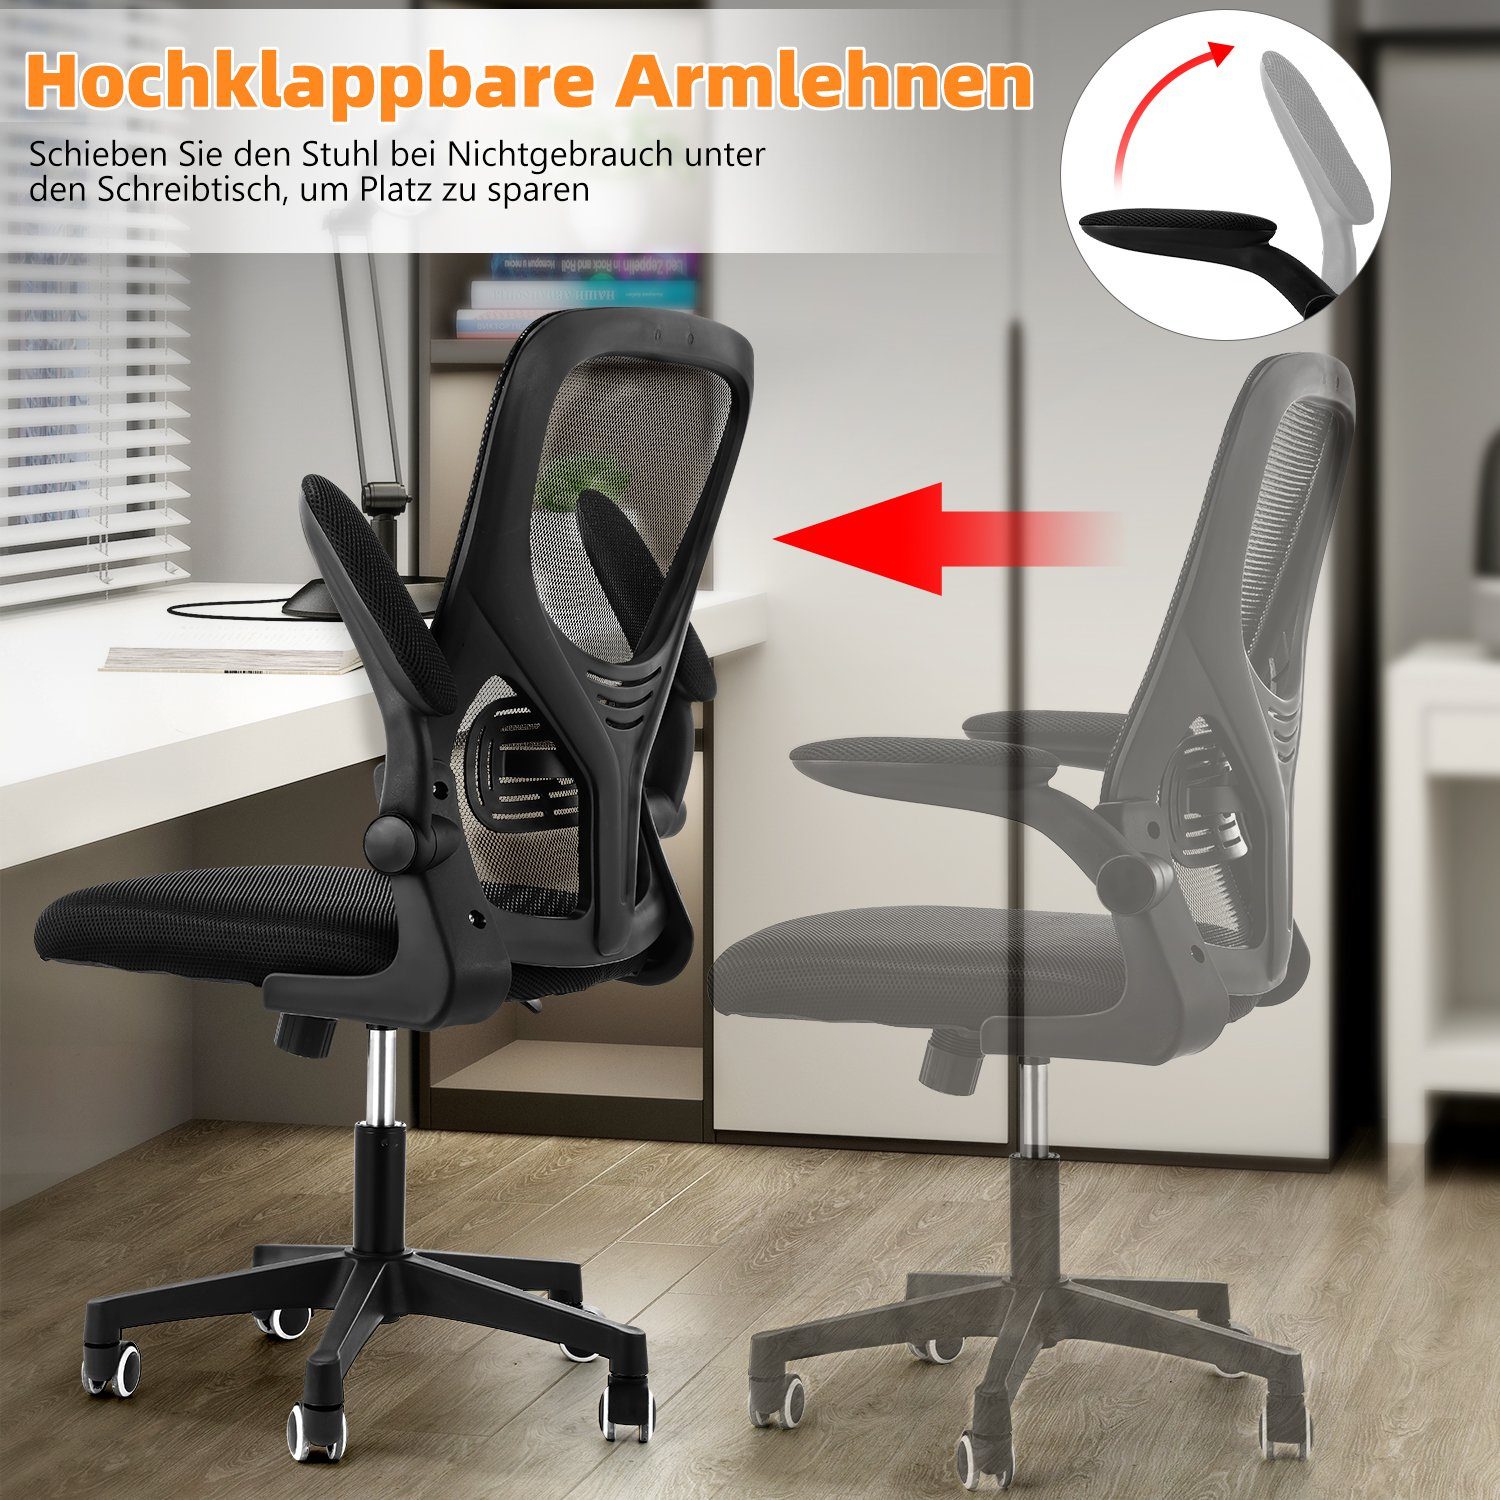 Chair, 90°-135° Schwarz-TB0003 Fußkreuz, Wippfunktion Schreibtischstuhl Ergonomischer Verchromten Sitzfläche, Kunststoffrollen, Höhenverstellbar Gepolsterte LETGOSPT Schreibtischstuhl 5